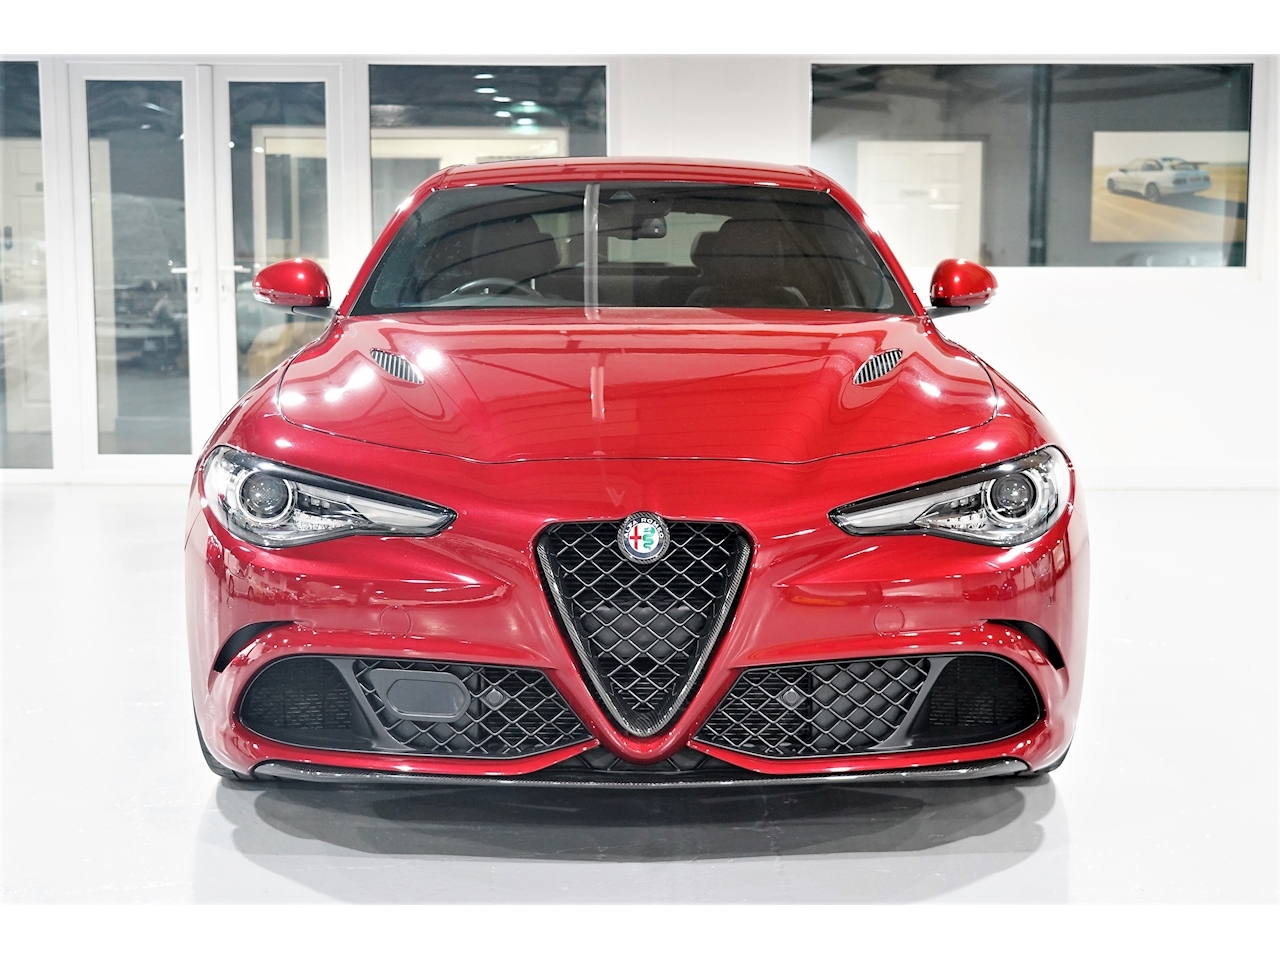 2017 Alfa Romeo Giulia Quadrifoglio 2.9 V6 510 Hp - Competizione Red - 850 Miles - Hpi Clear